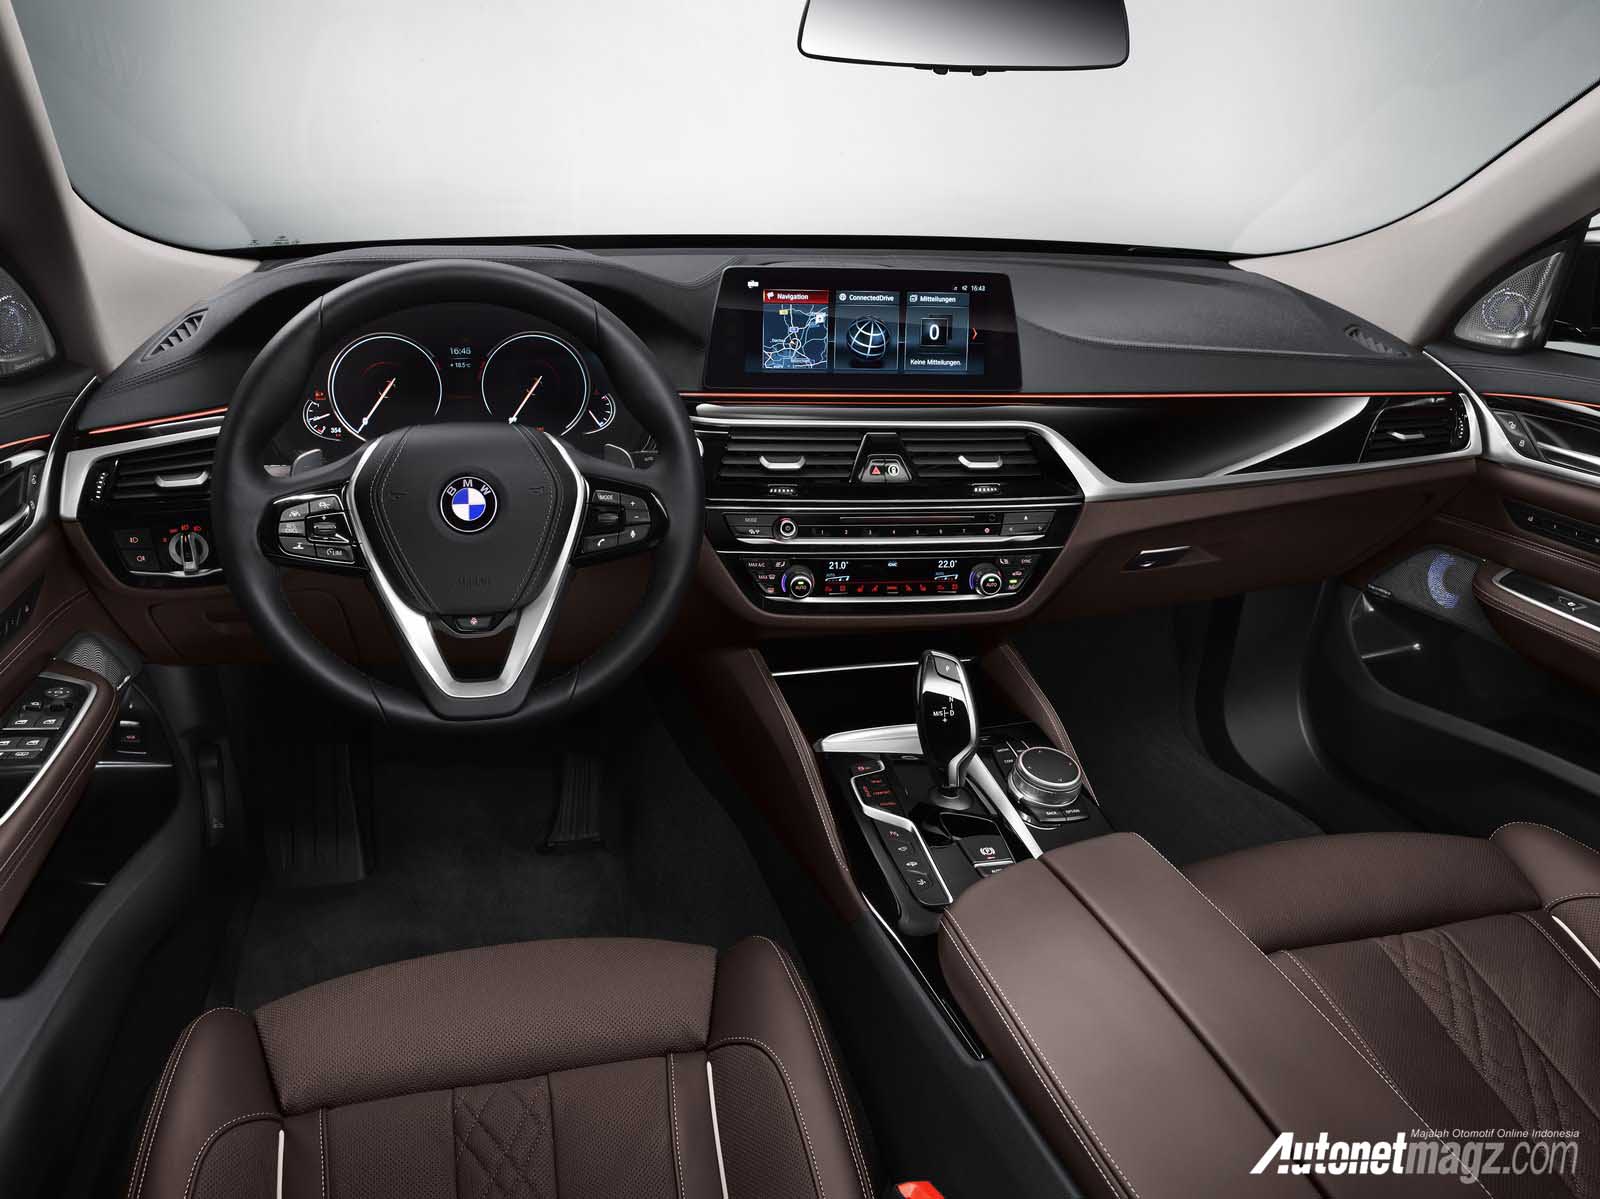 Berita, dashboard BMW 6 Series Grand Turismo: BMW Seri 6 Grand Turismo, Seri 5 GT yang Lebih Besar dan Cantik